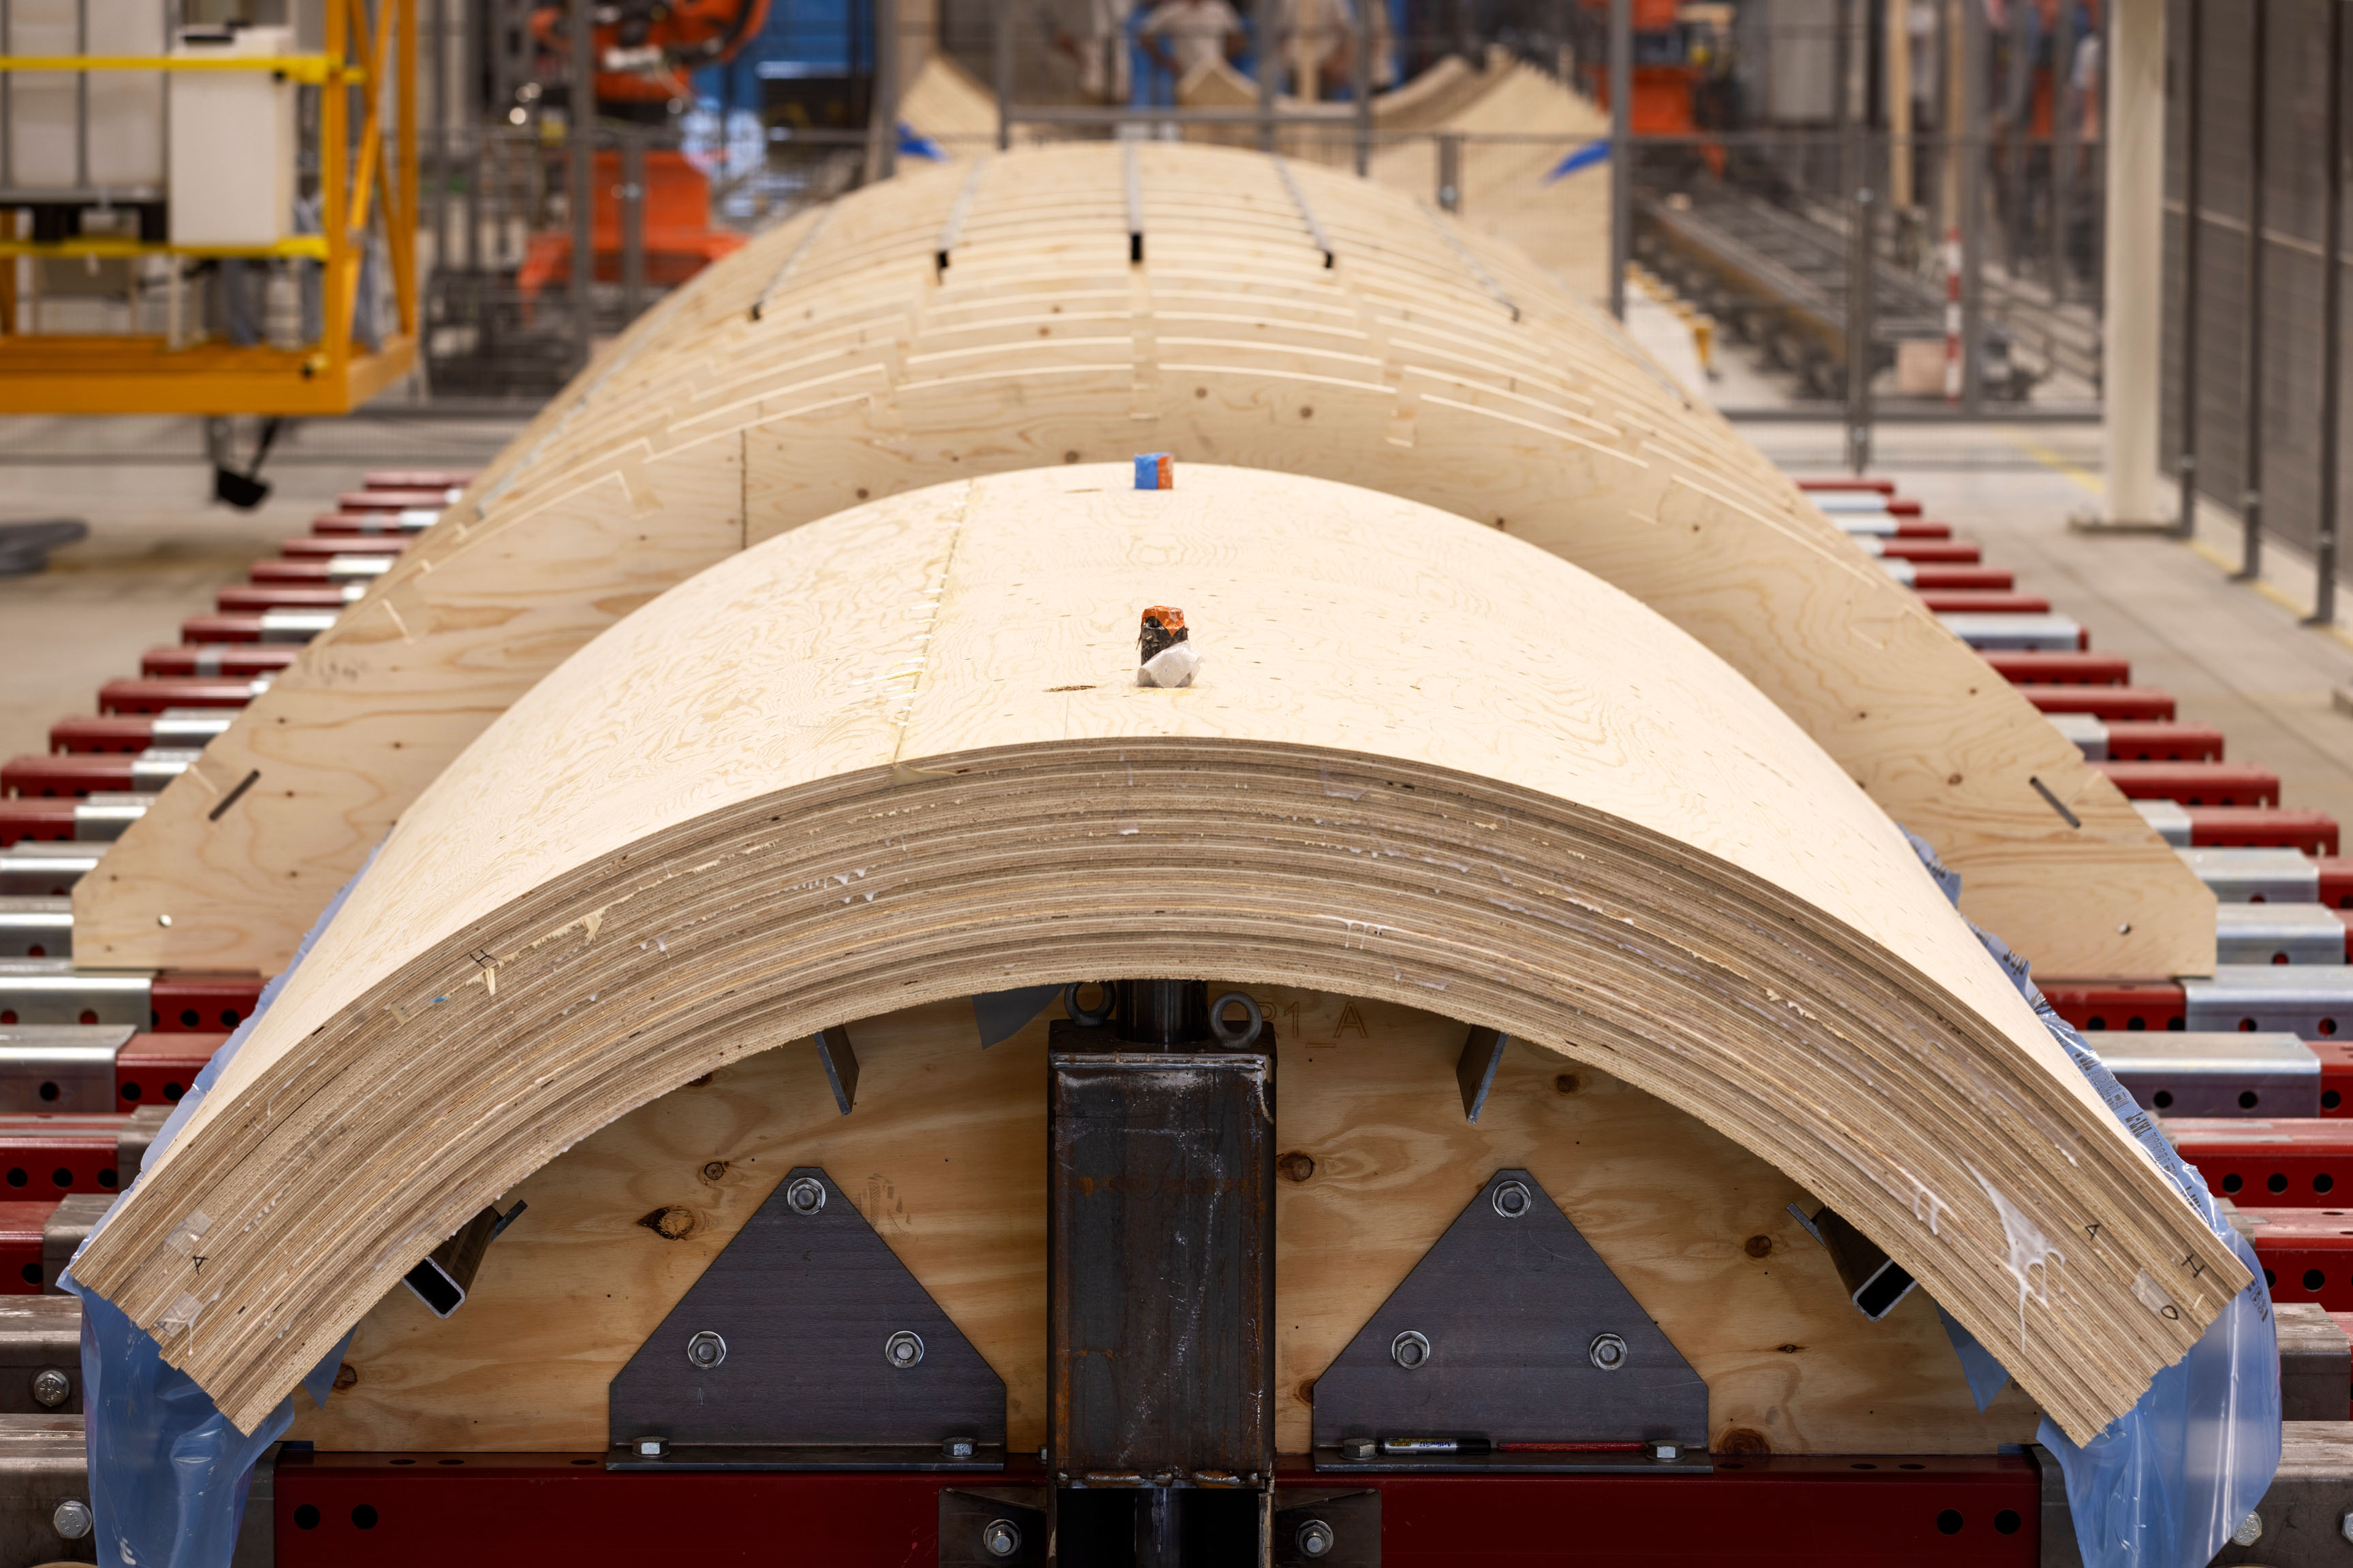 Vindkraftstornen byggs i moduler i laminerat trä vilket innebär stora utsläppsminskningar jämfört med konventionella material som stål och betong. Foto: Sofia Sabel.